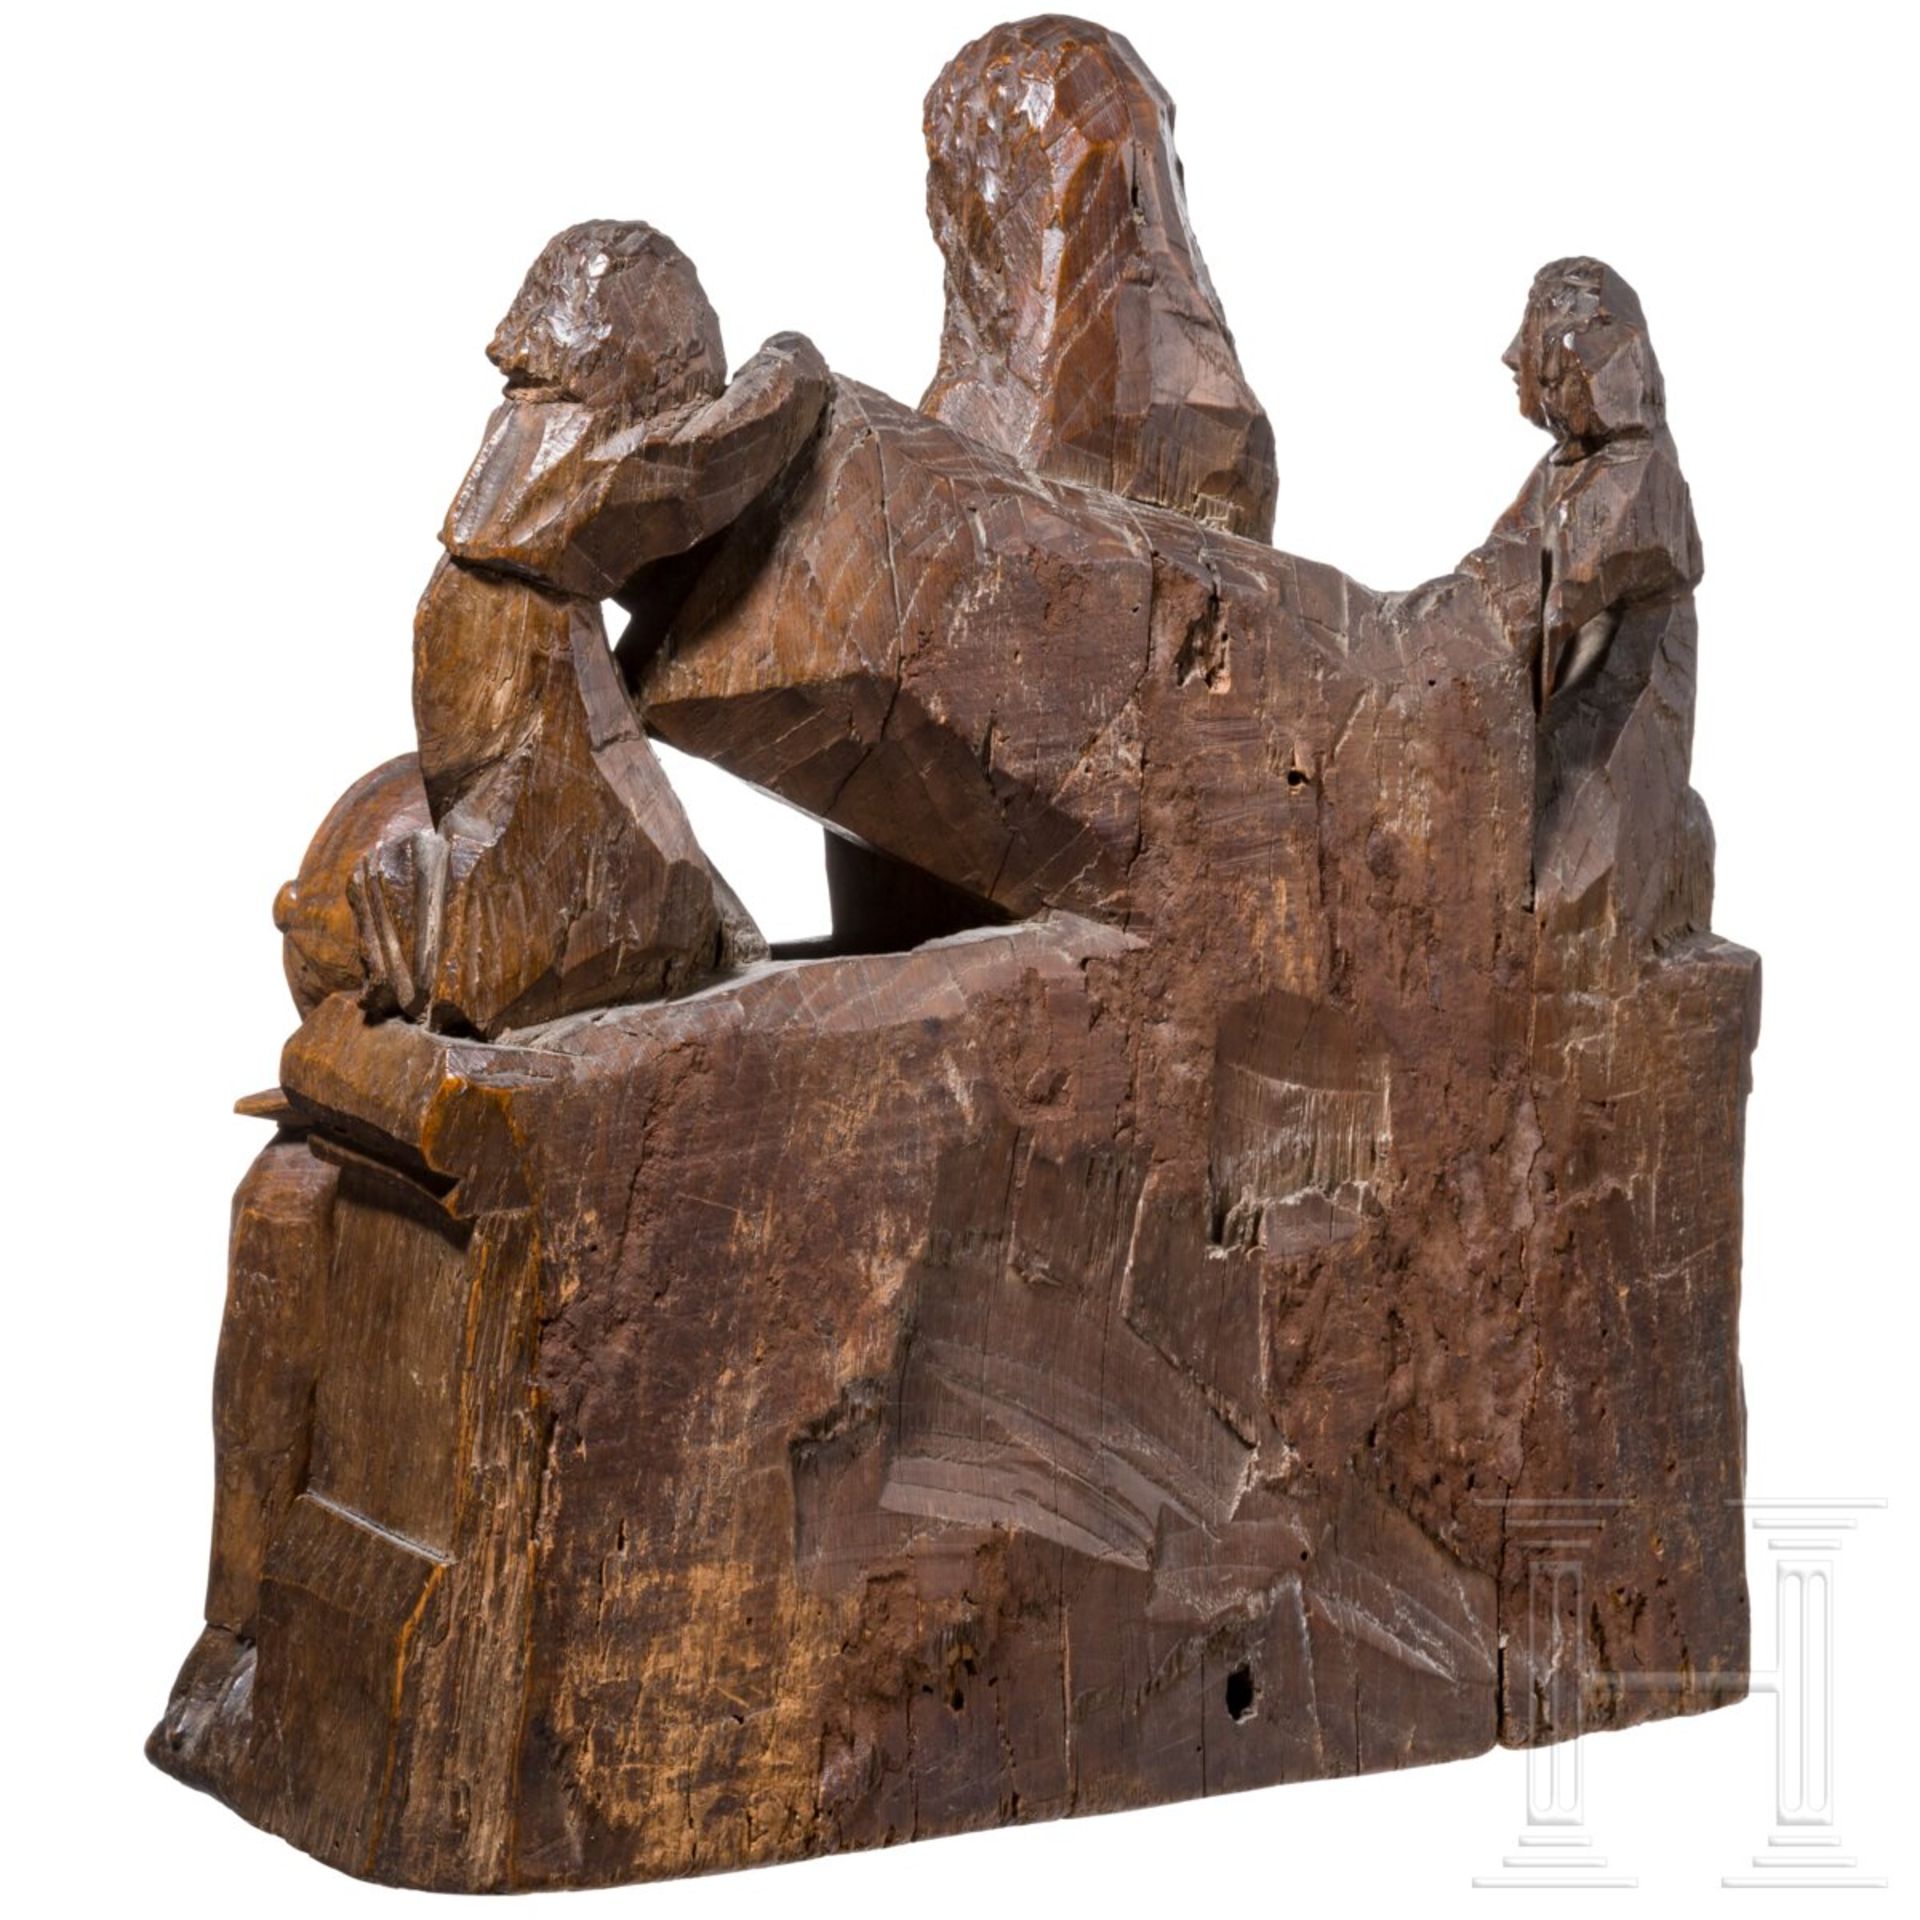 Retabelgruppe mit der Auferstehung Christi, Tournai (Doornik), um 1500 - Bild 2 aus 4